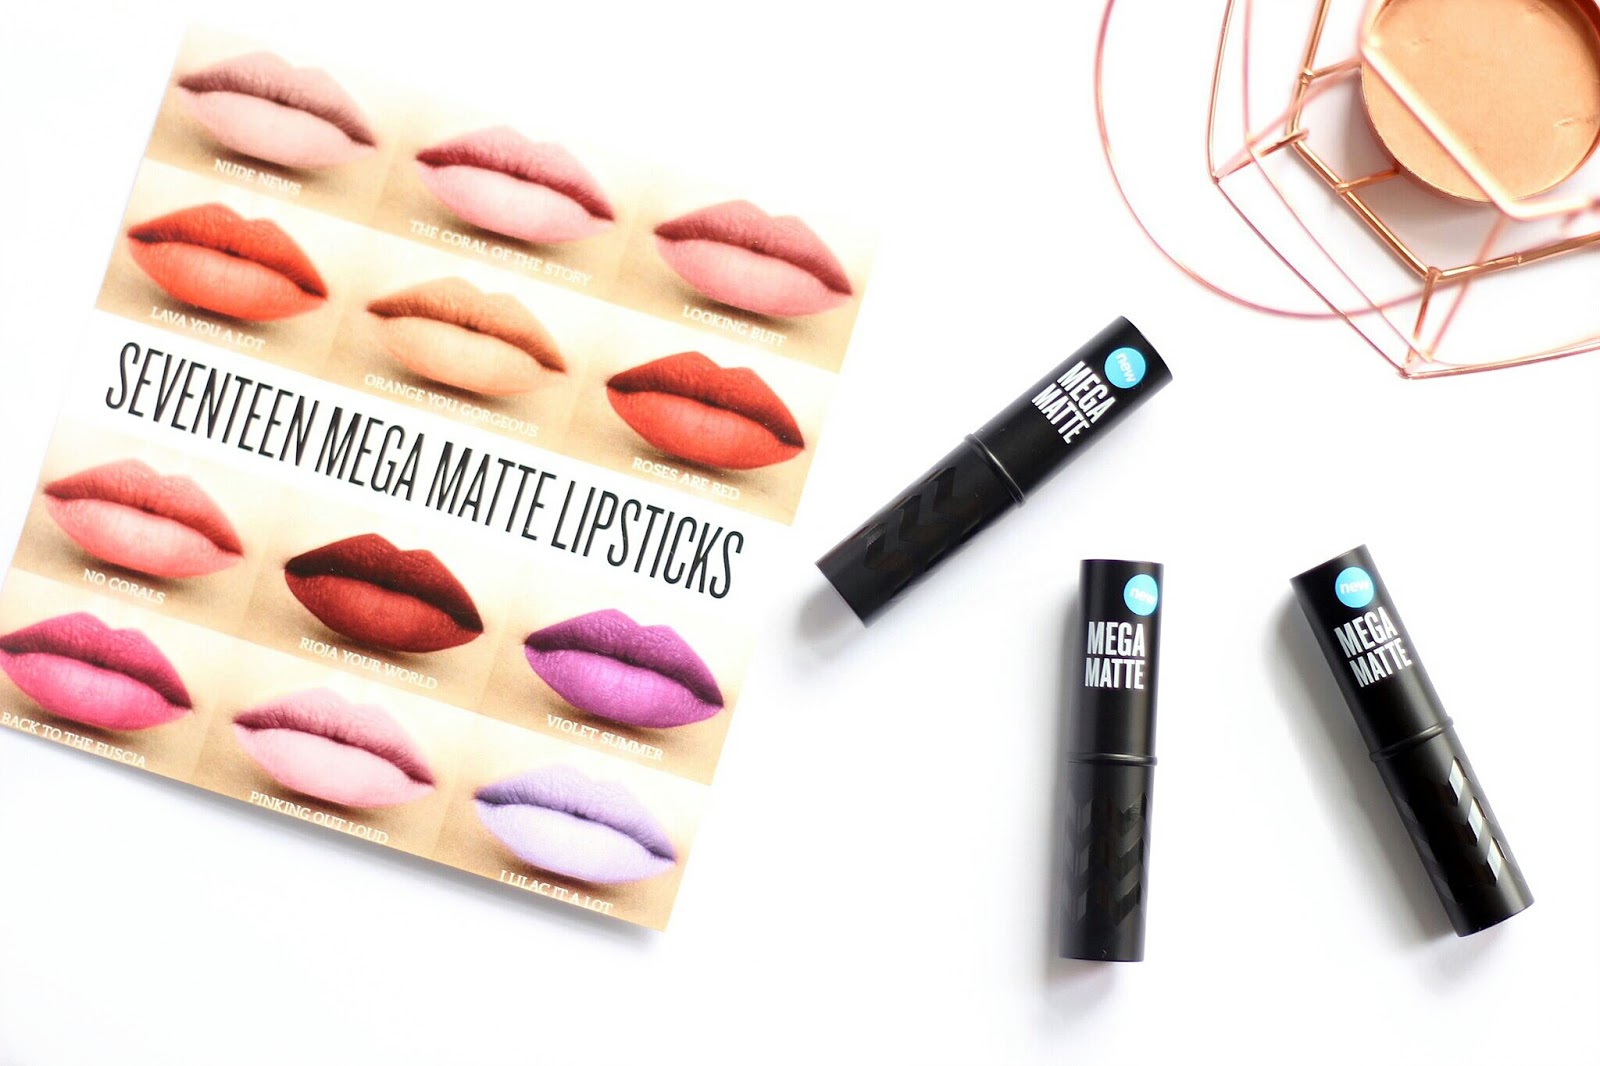 Seventeen Mega Matte Lipsticks